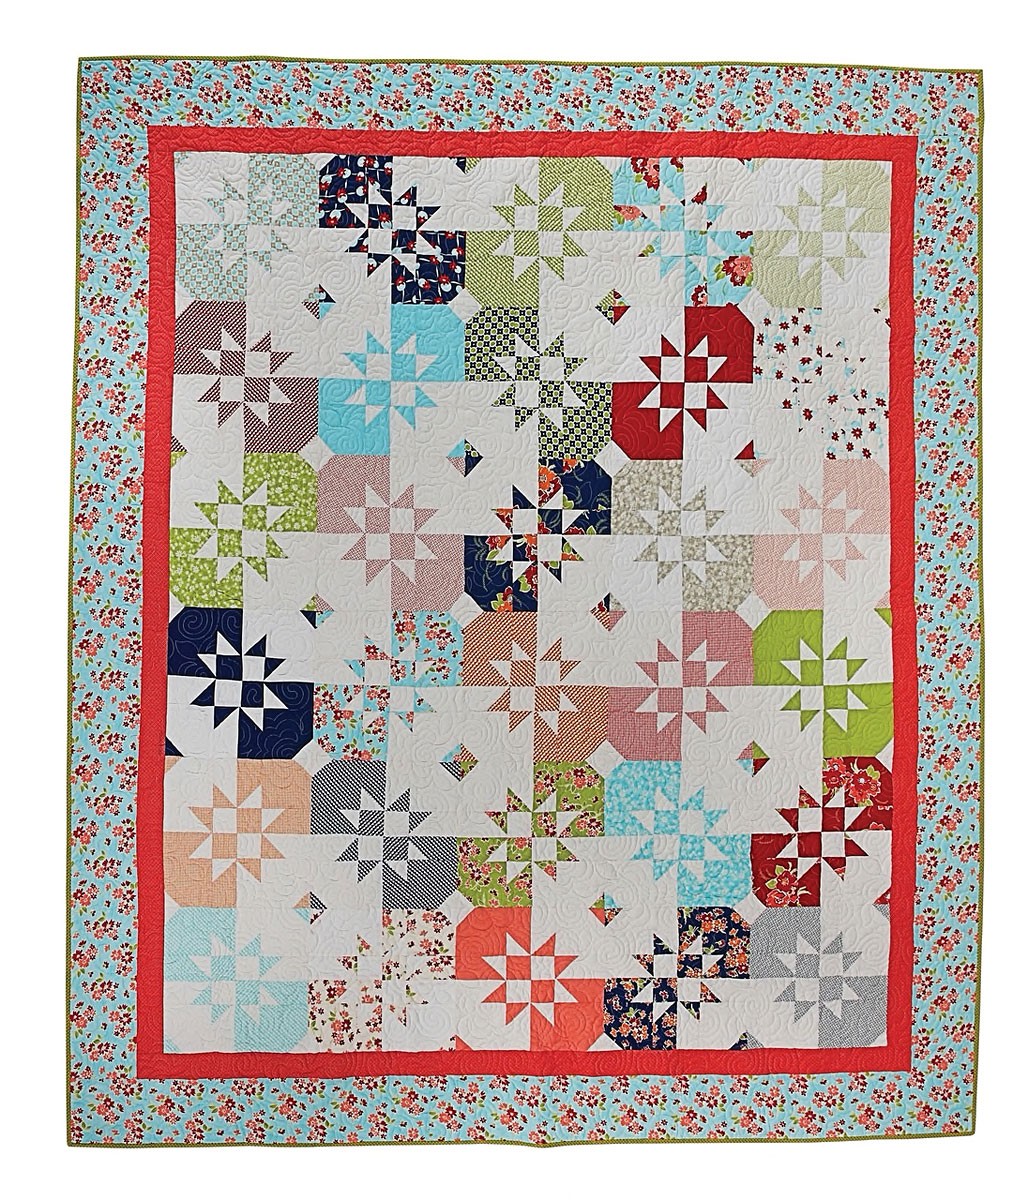 Garden Stars Quilt Pattern by Missouri Star Whimsical | Missouri Star Quilt Co.